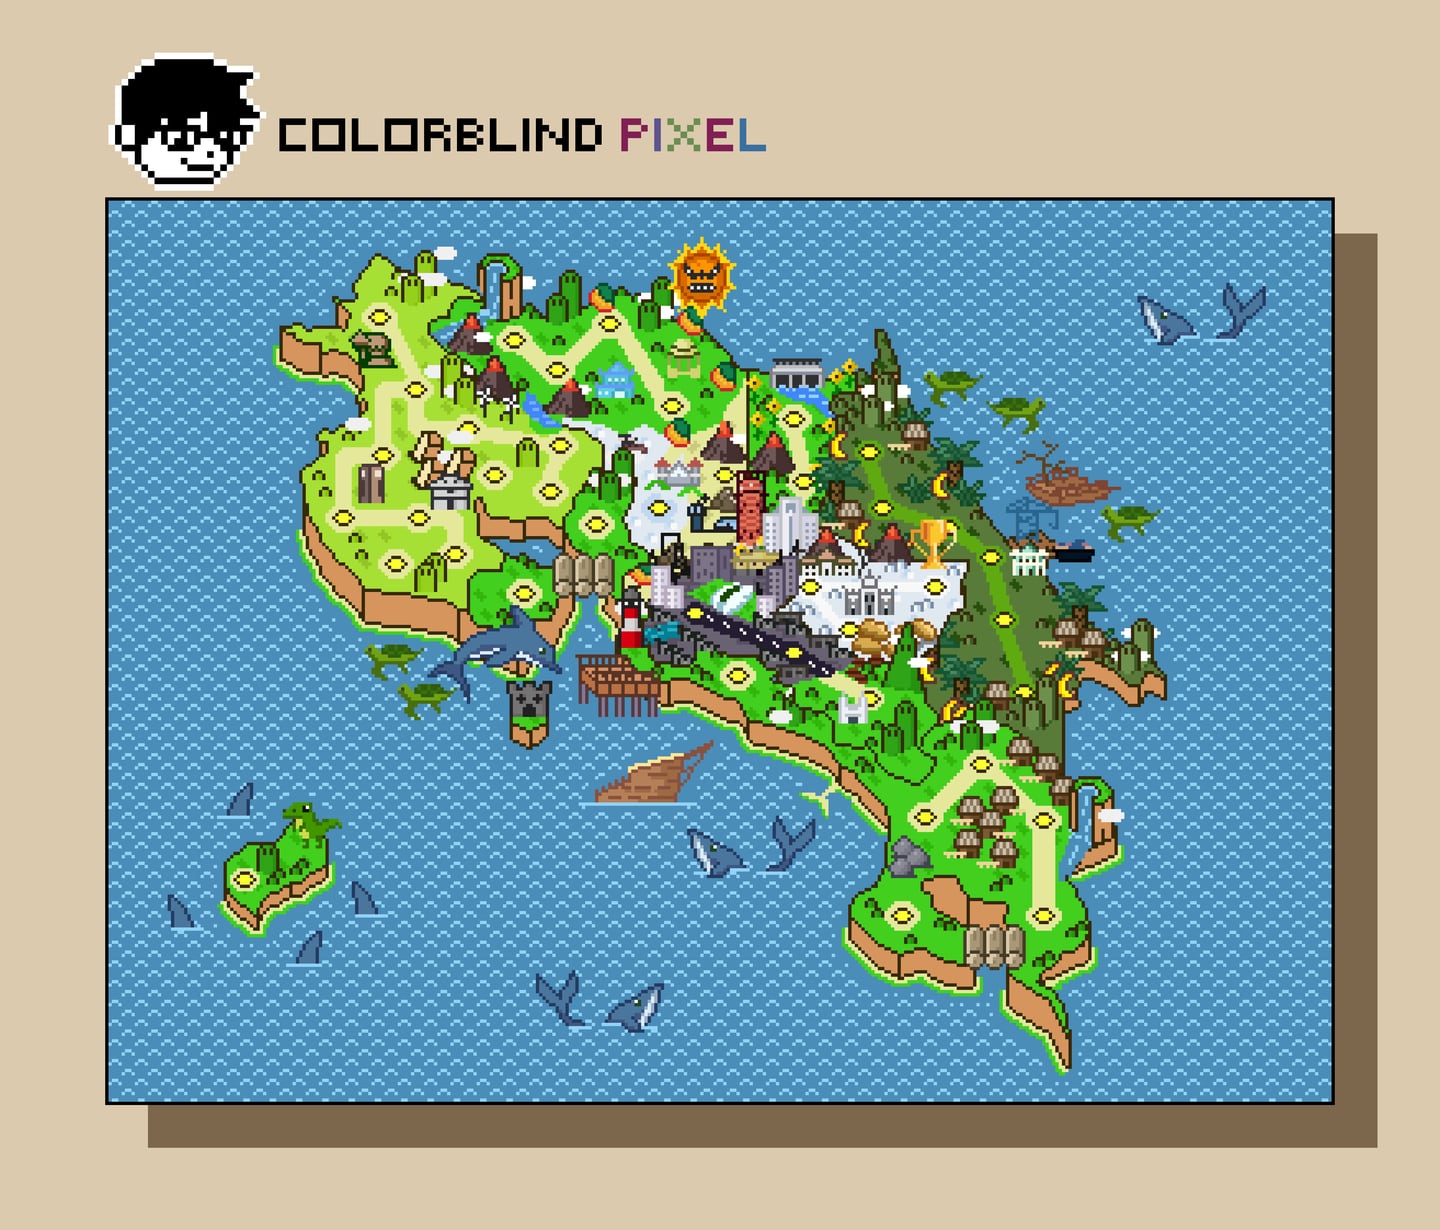 Dentro del mapa de Costa Rica, Colorblind Pixel incluyó aspectos ambientales del país, como volcanes y montañas, así como edificios emblemáticos de cada provincia.